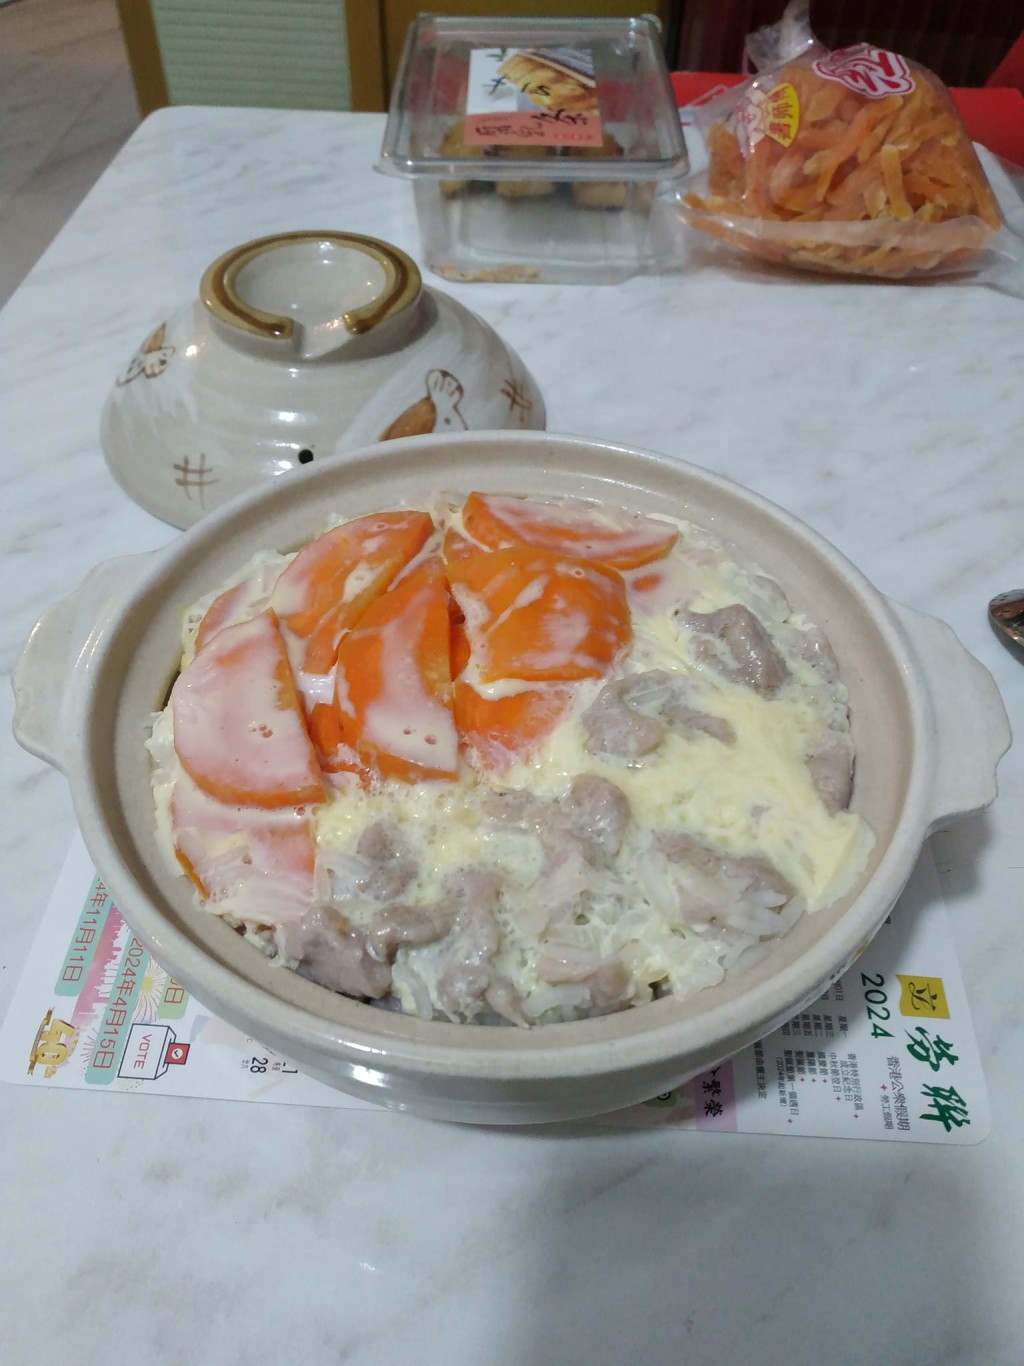 红萝卜 猪肉片 滑蛋 煲仔饭（图片来源：Facebook@香港茶餐厅及美食关注组）